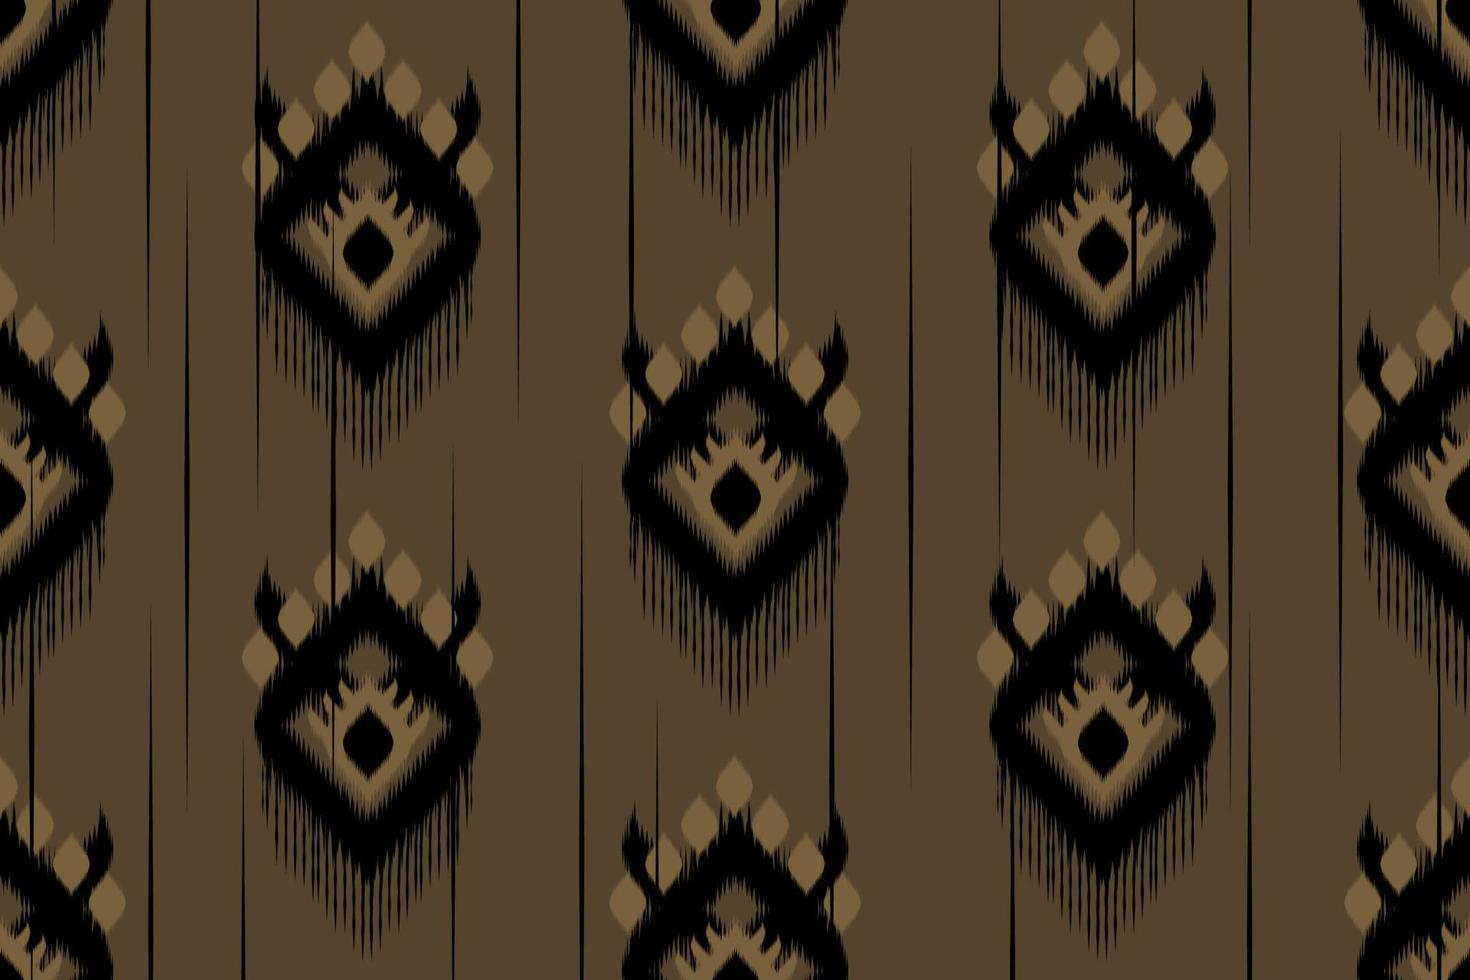 ikat brun oriental. motif géométrique sans couture ethnique traditionnel. style tribal rayé. conception pour le fond, l'illustration, le tissu, le batik, les vêtements, l'emballage, le papier peint, le tapis, la broderie vecteur